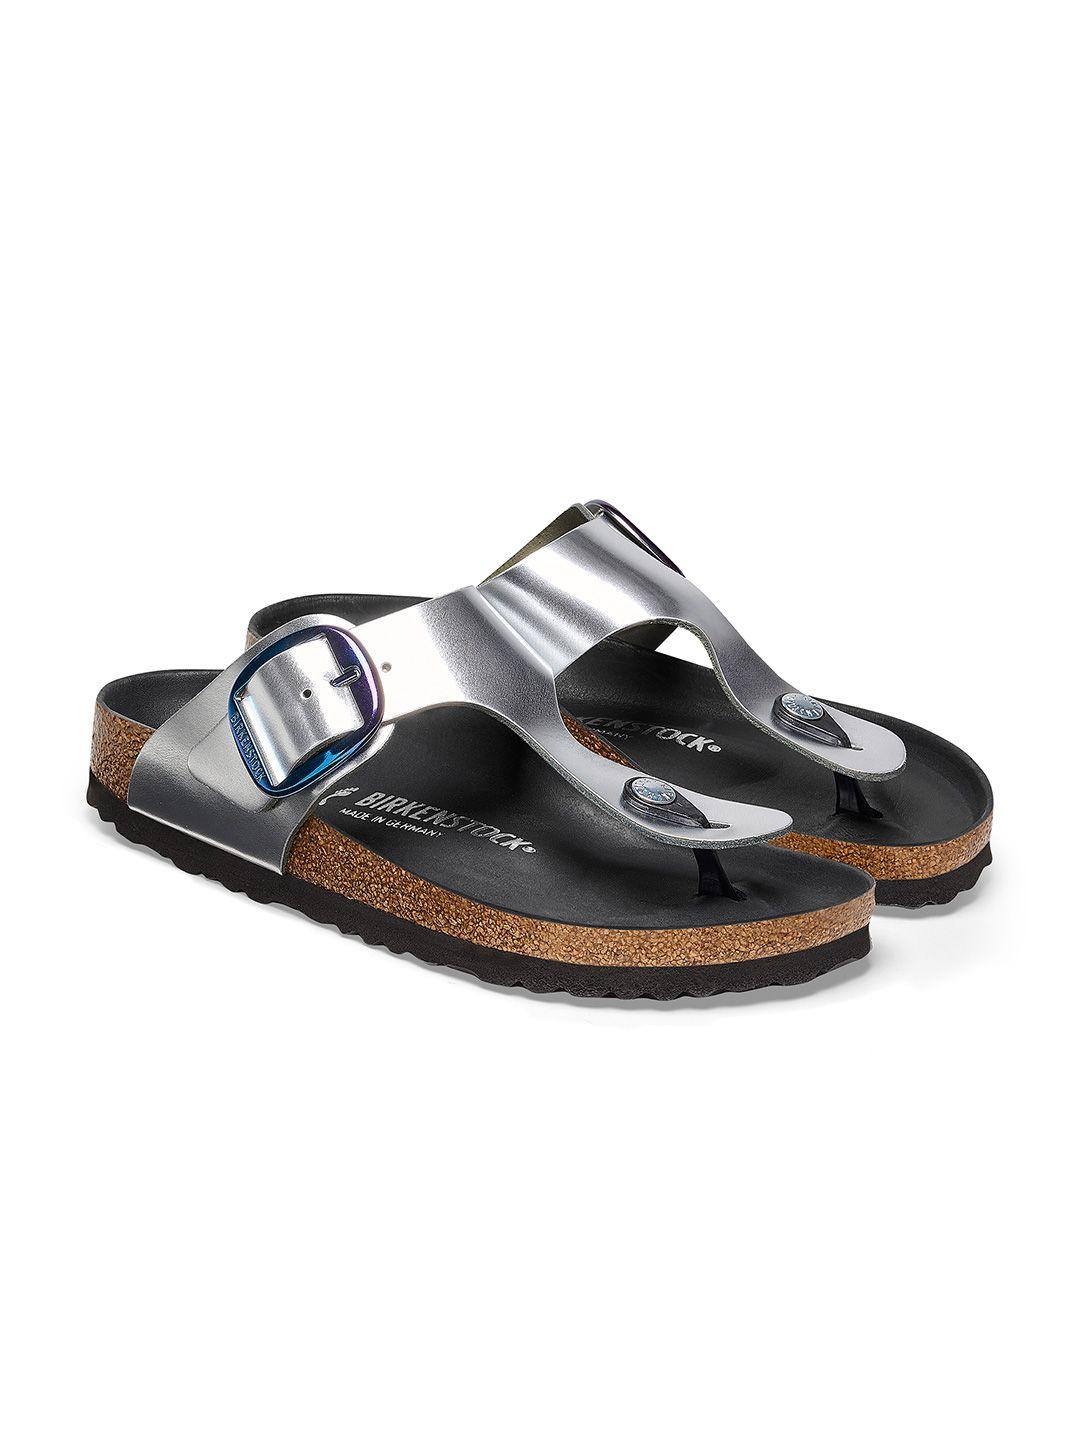 birkenstock men comfort sandals